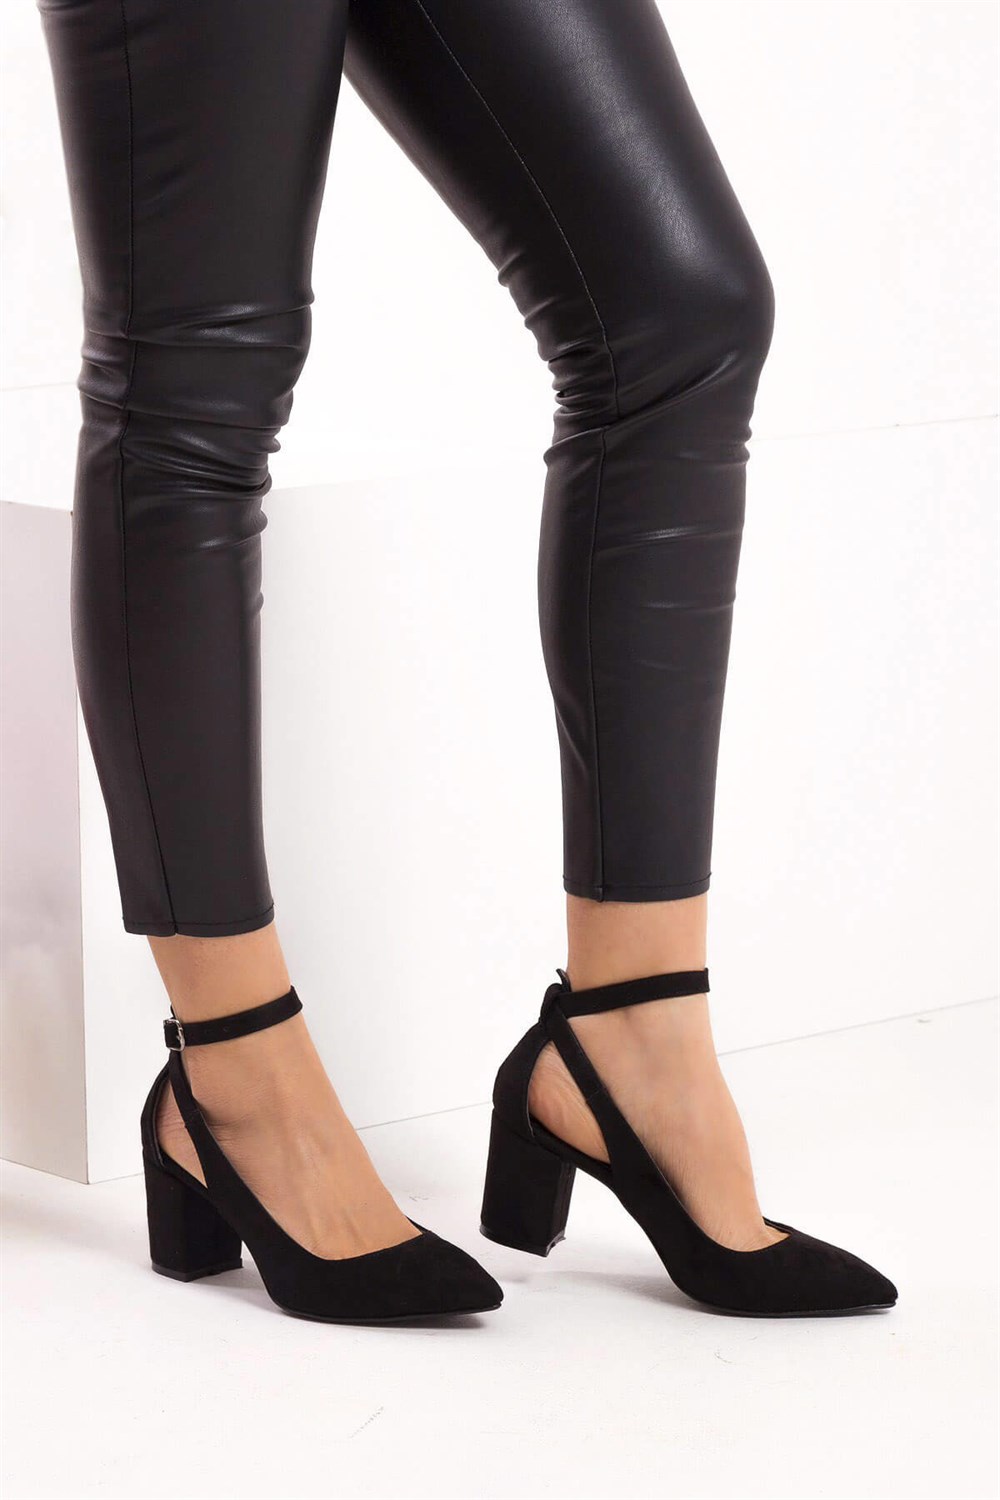 Fox Shoes Siyah Kadın Topuklu Ayakkabı D922223602